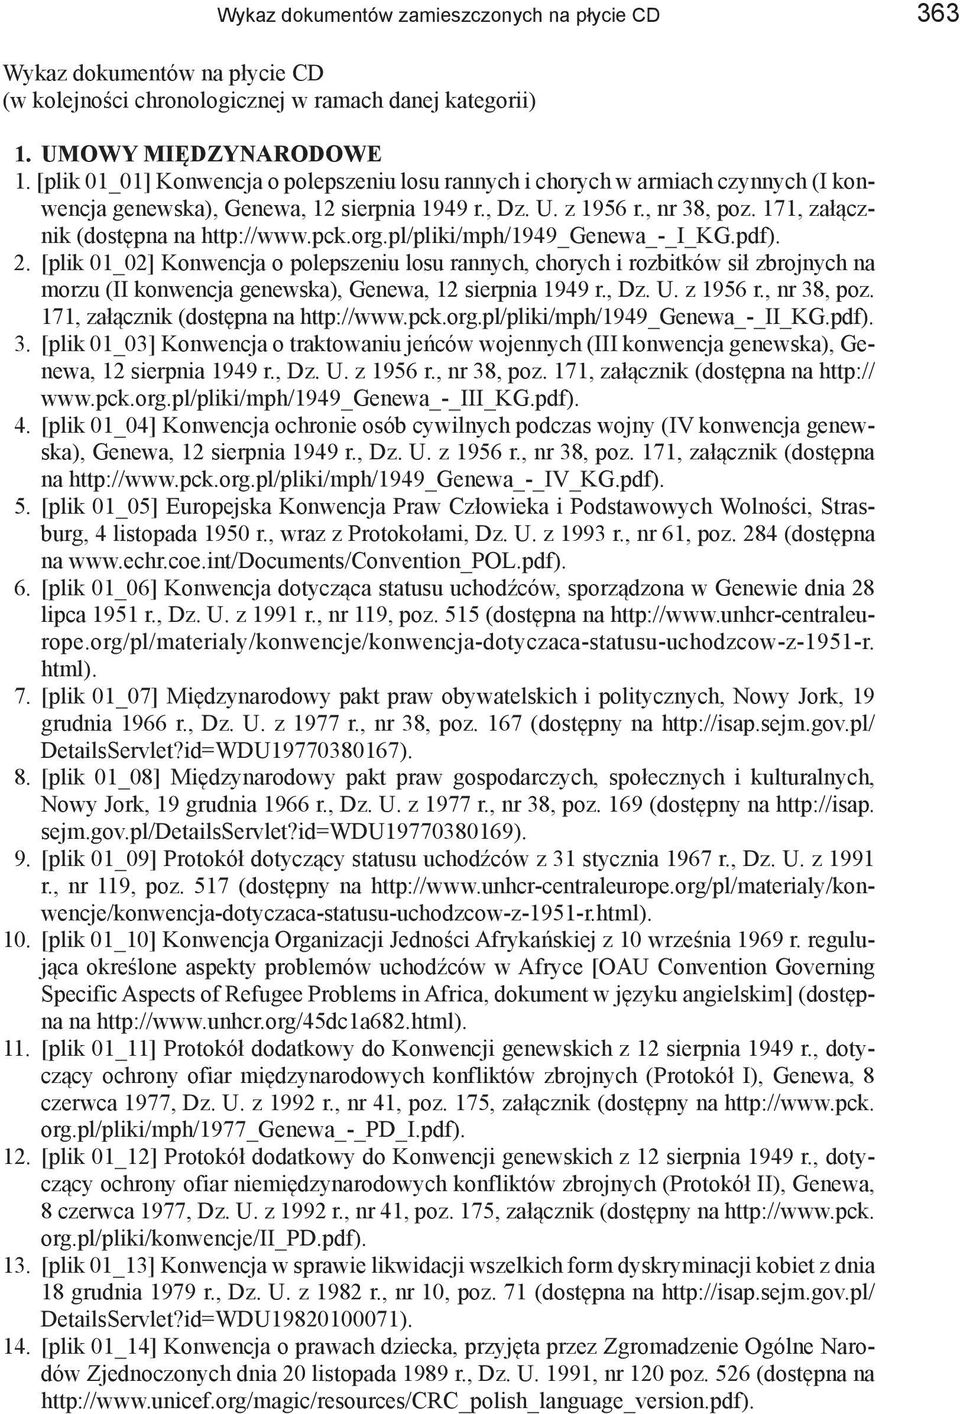 171, załącznik (dostępna na http://www.pck.org.pl/pliki/mph/1949_genewa_-_i_kg.pdf). 2.